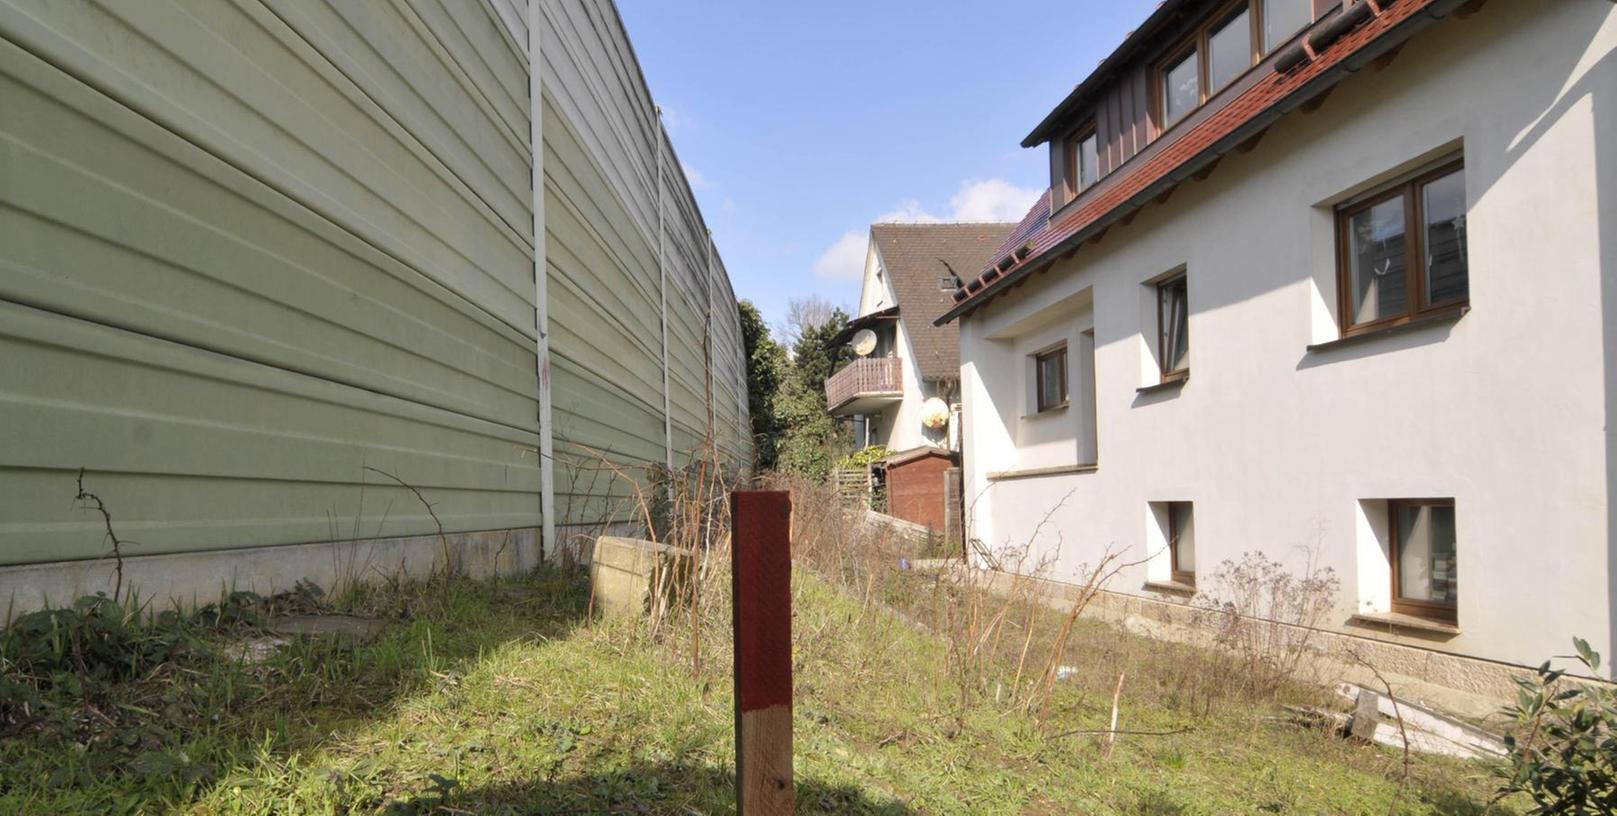 Lärmschutz: Höhere Wände für die A73 in Forchheim